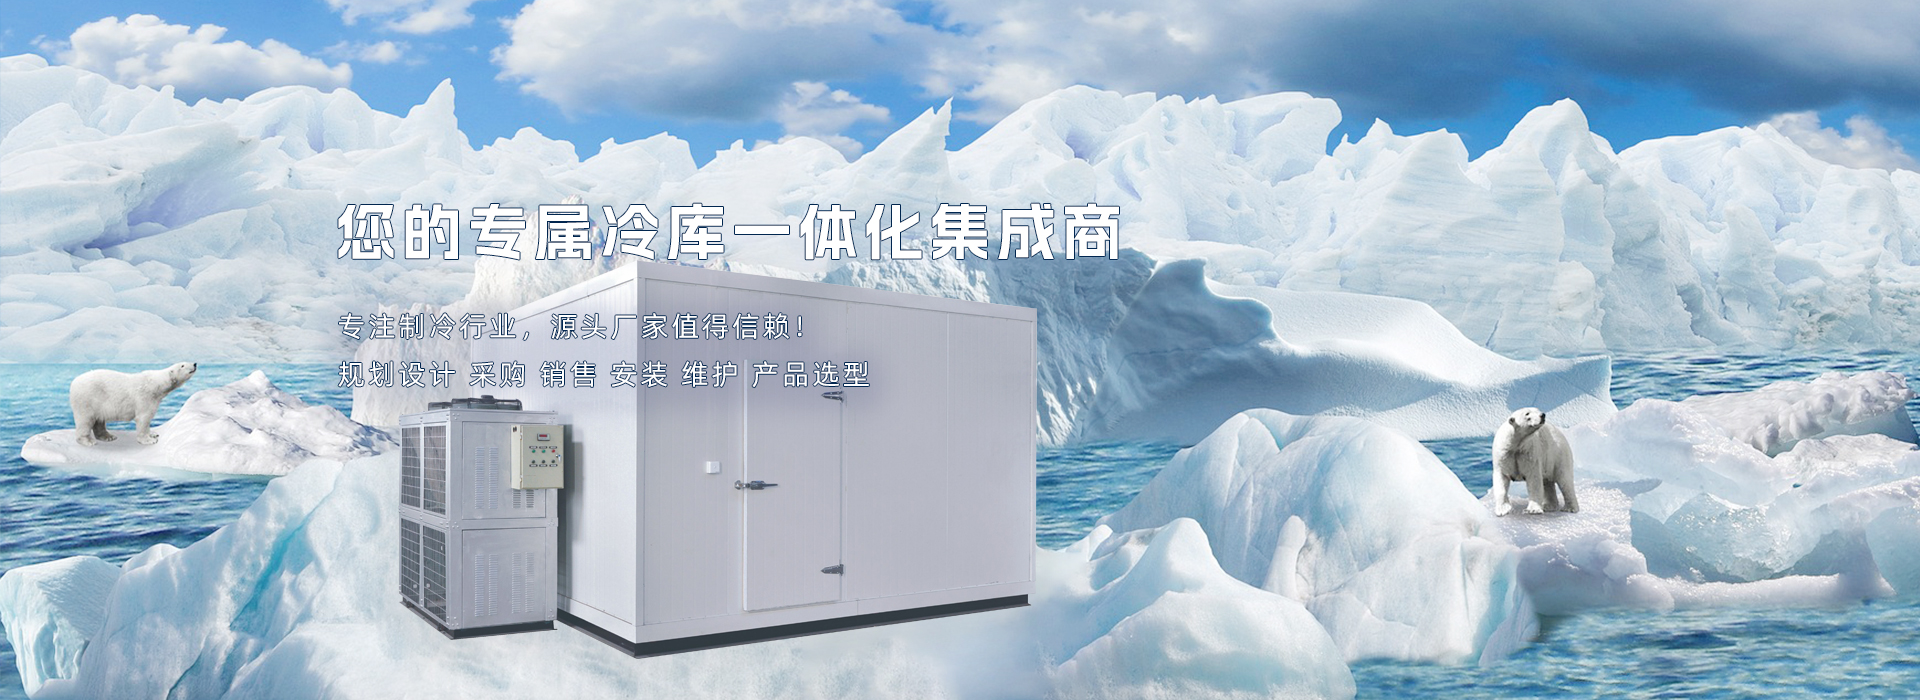 上海冰灿制冷科技有限公司